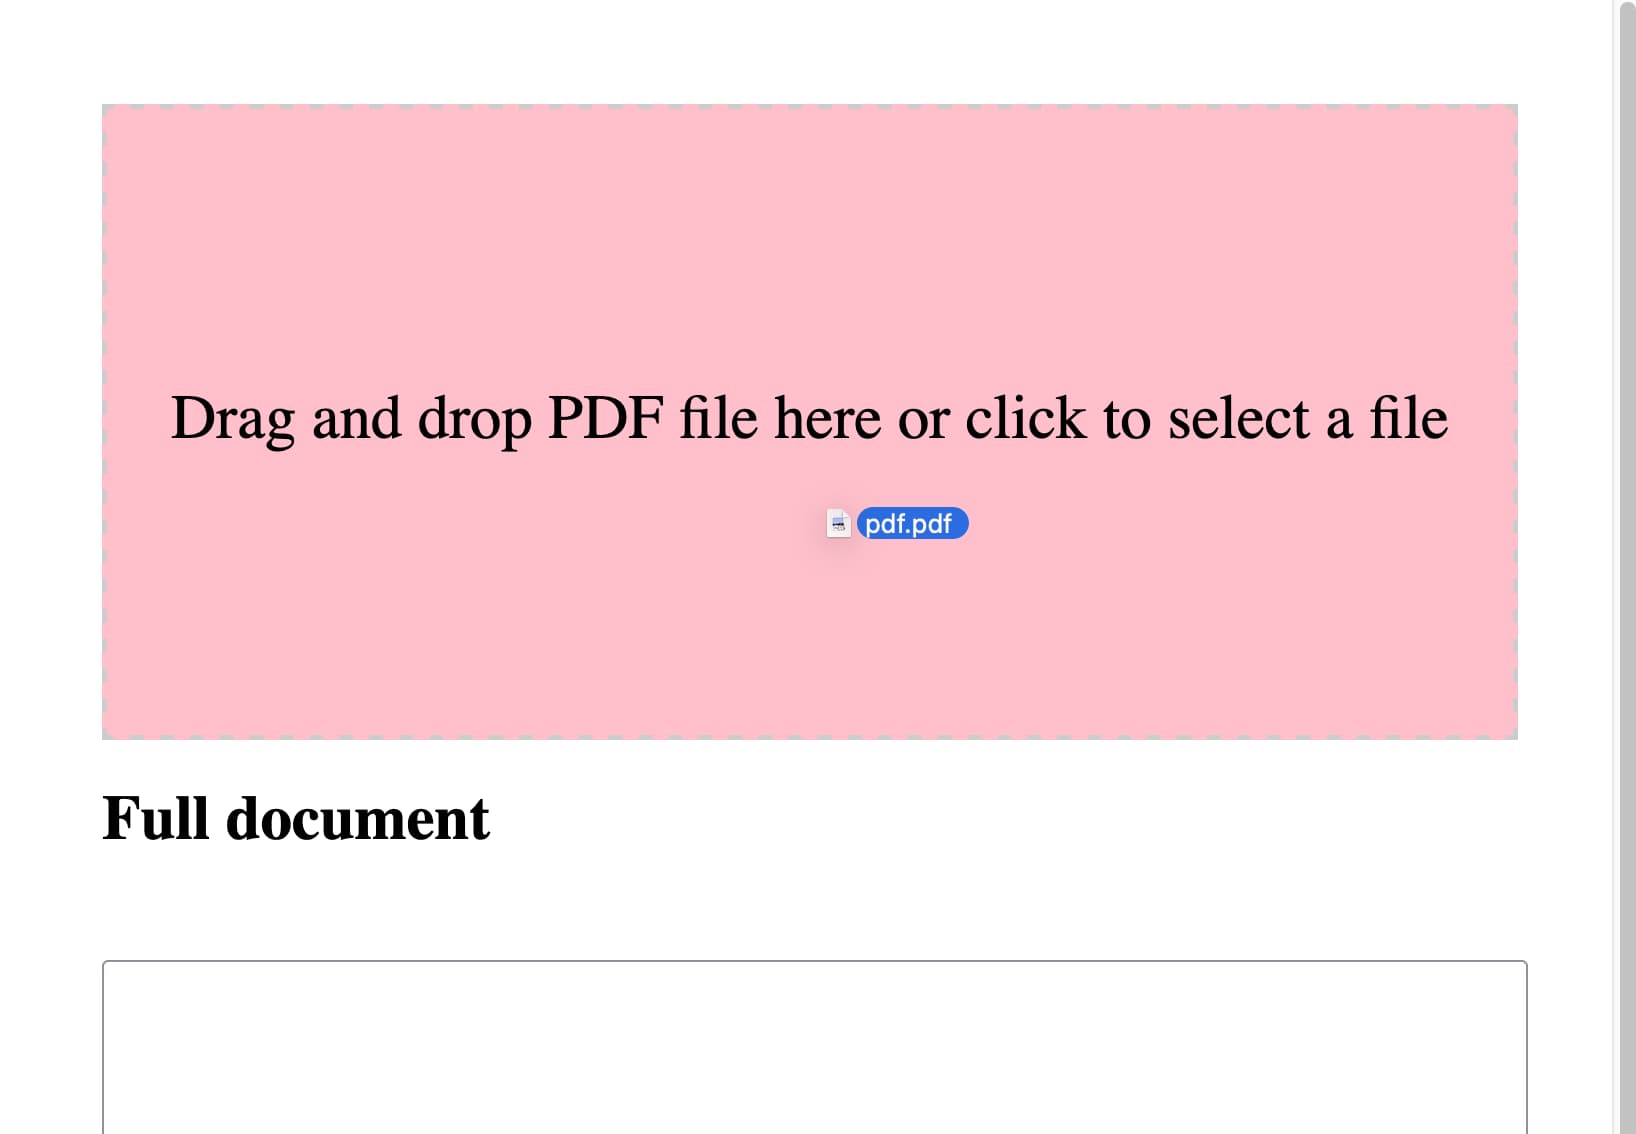 PDF 文件被拖到方框上时，方框变成粉红色。“完整文档”的标题显示在下方